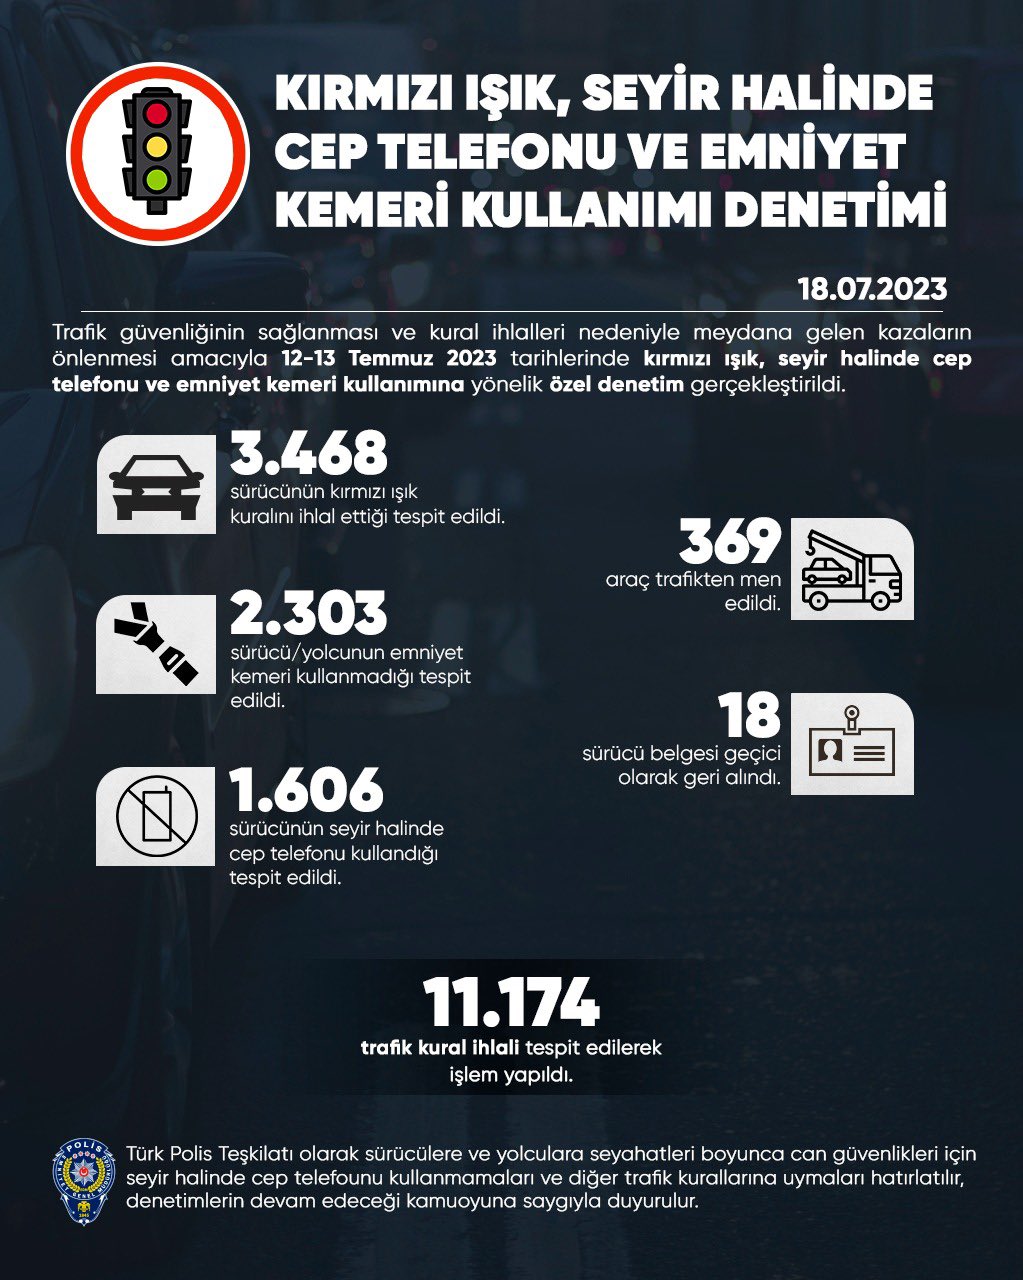 Türkiye genelinde trafik denetimi: 369 araç trafikten men edildi